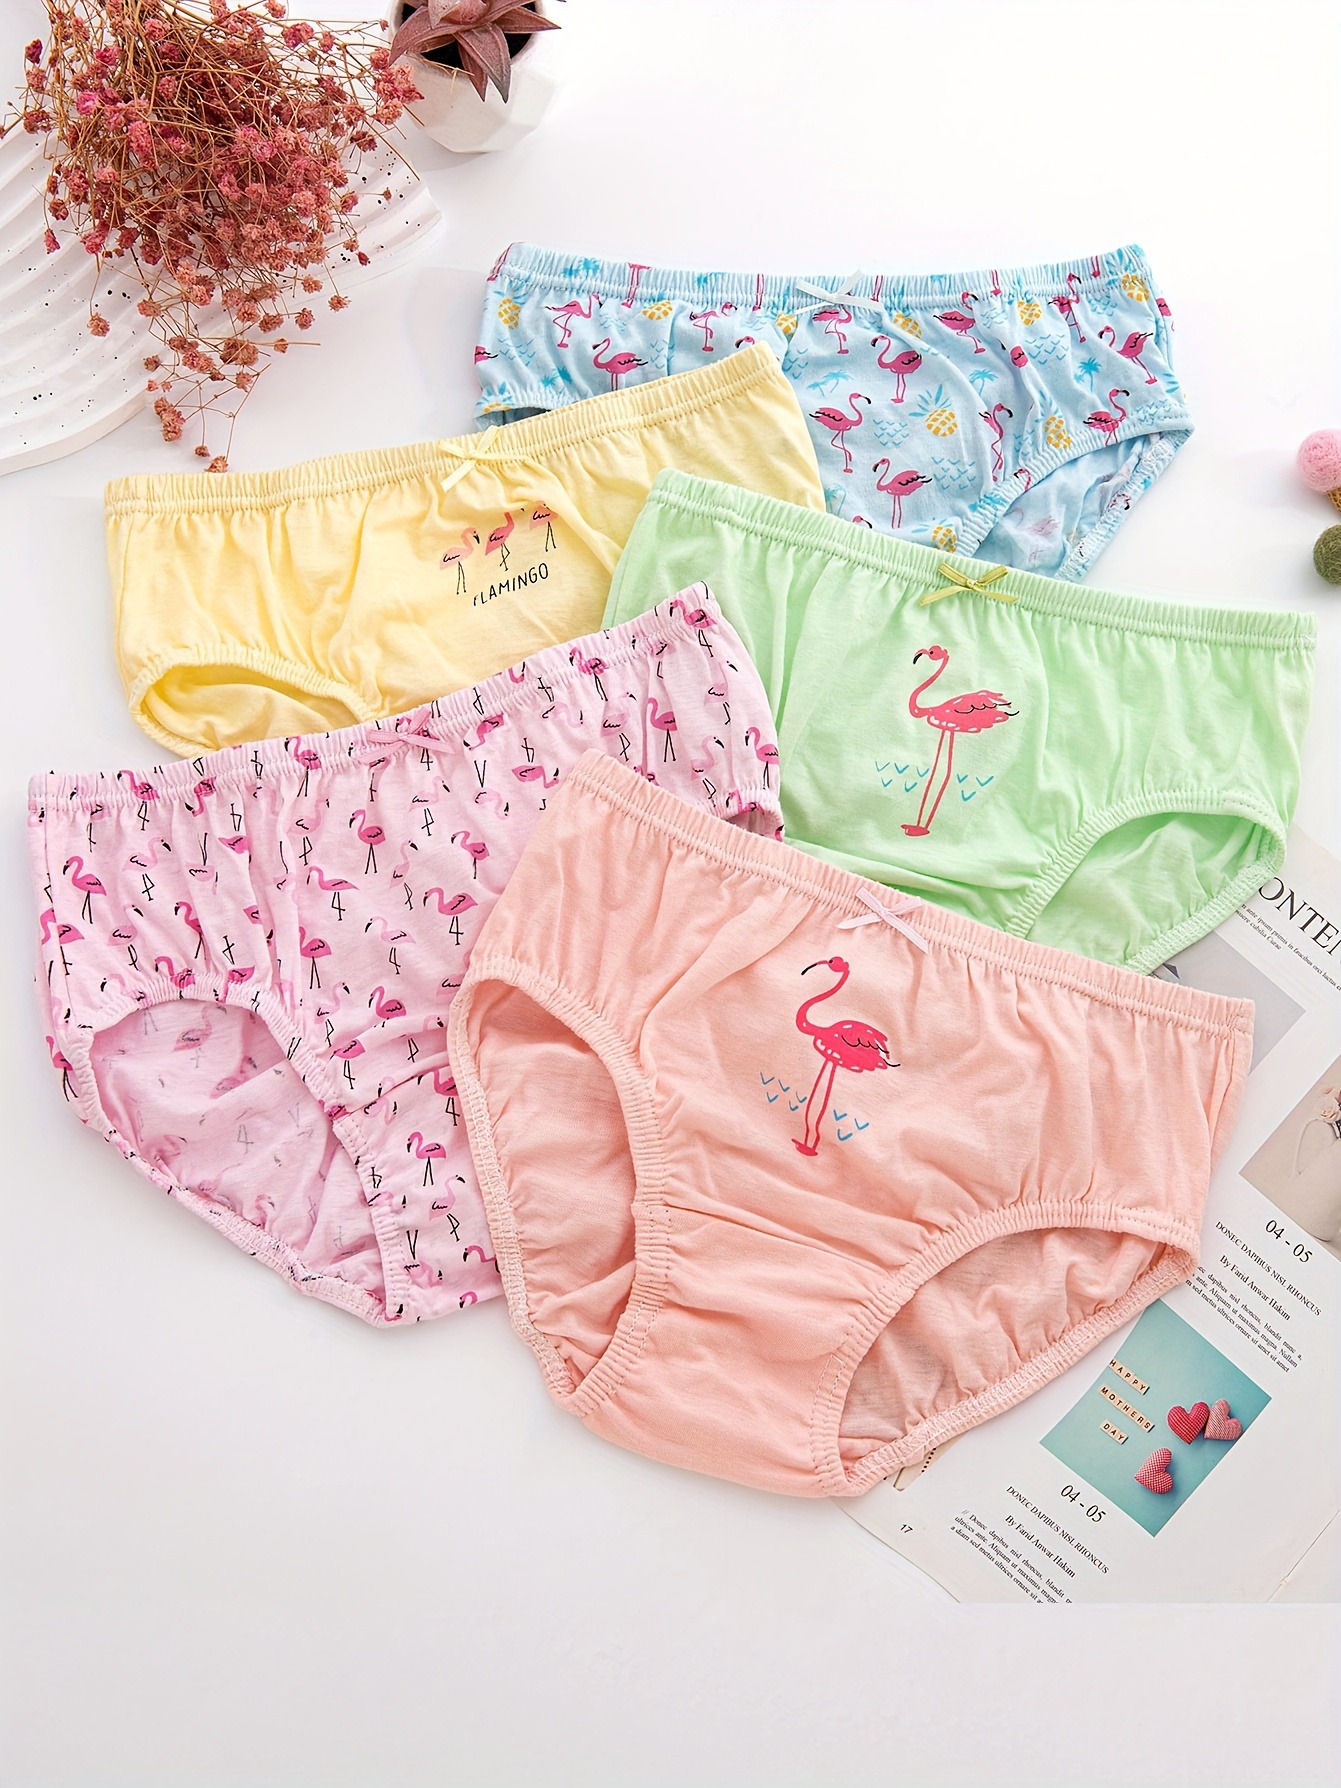 Girls 100% Cotton Briefs All-Season Underwear for Kids Girls